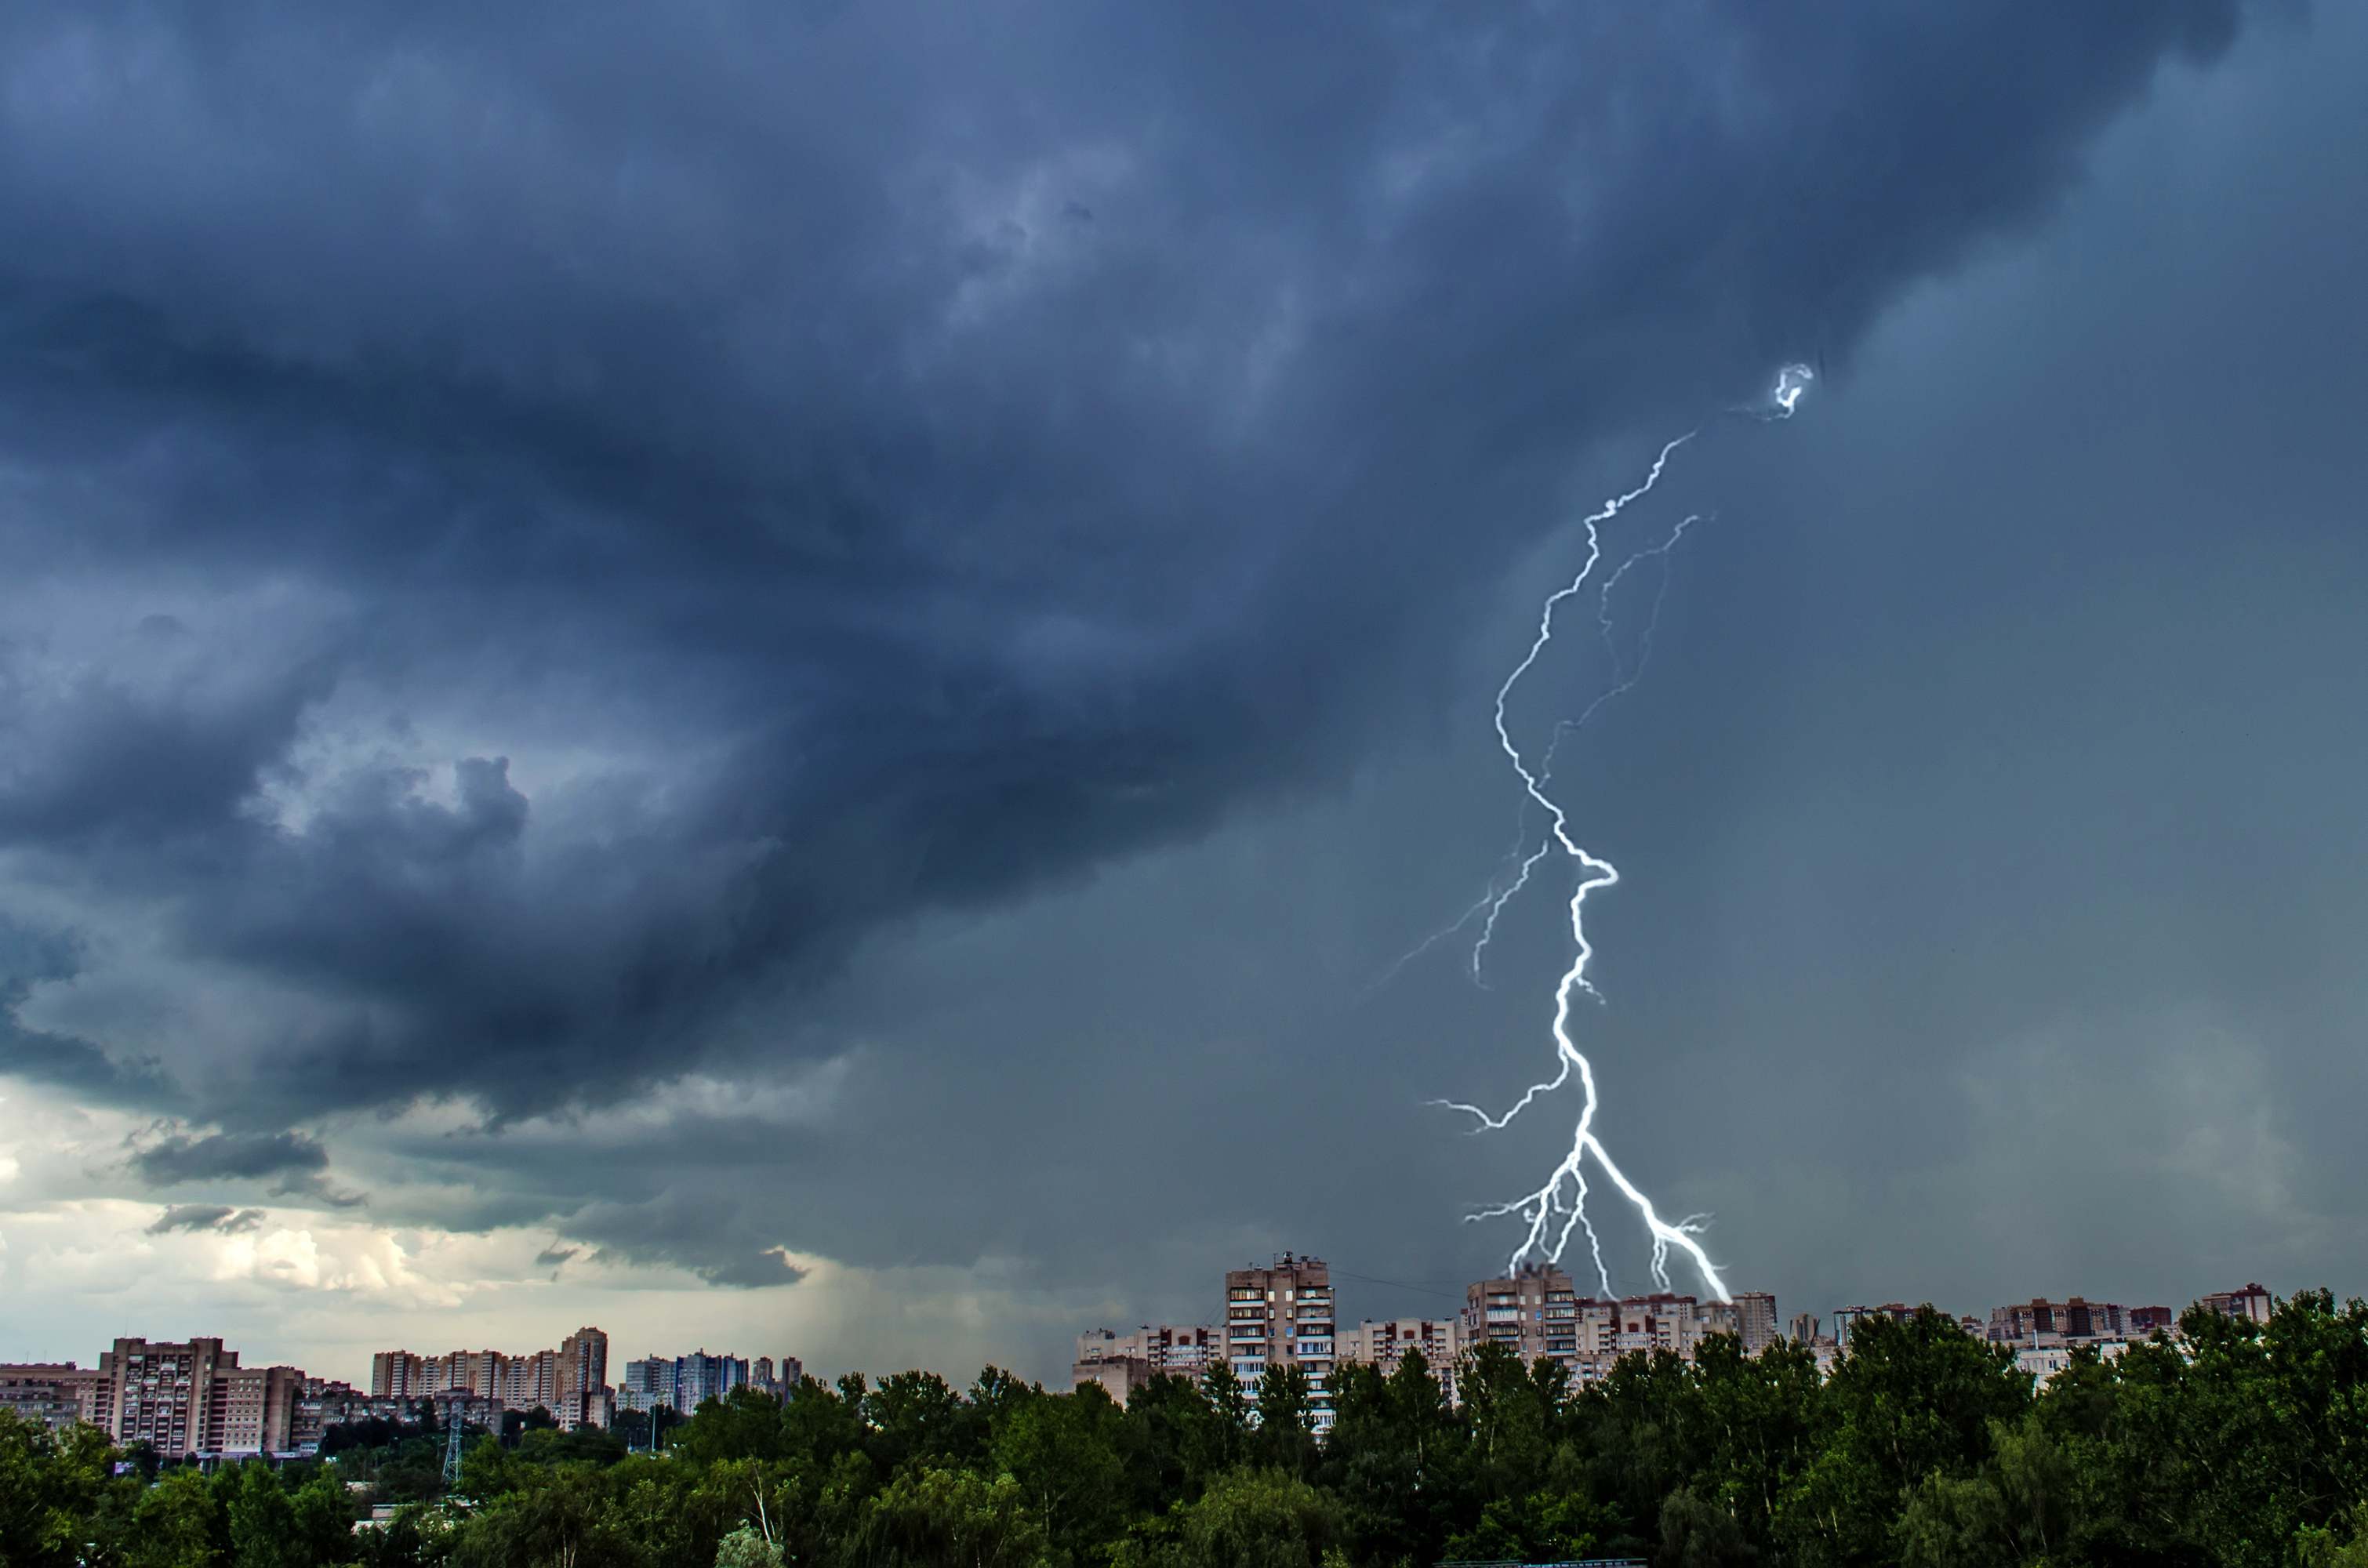 lightning lighting bolt in the sky over a city